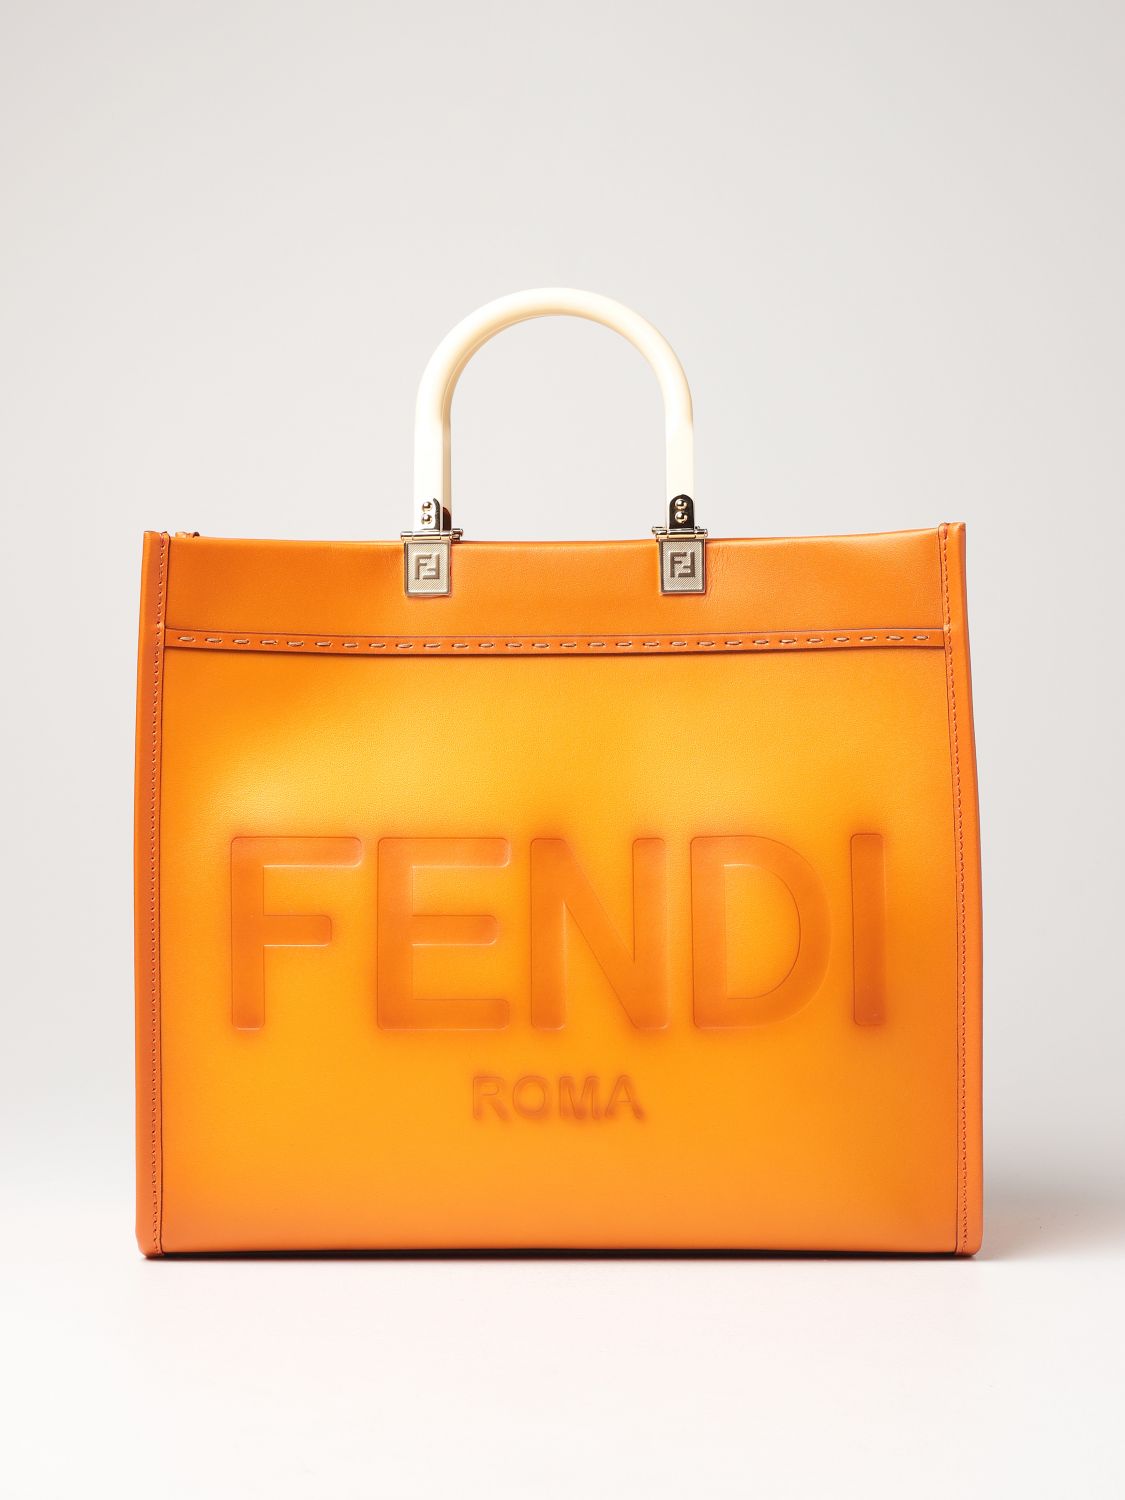 FENDI: Sunshine bag in gradient leather with big logo - | Fendi handbag 8BH386 AF2G online at GIGLIO.COM